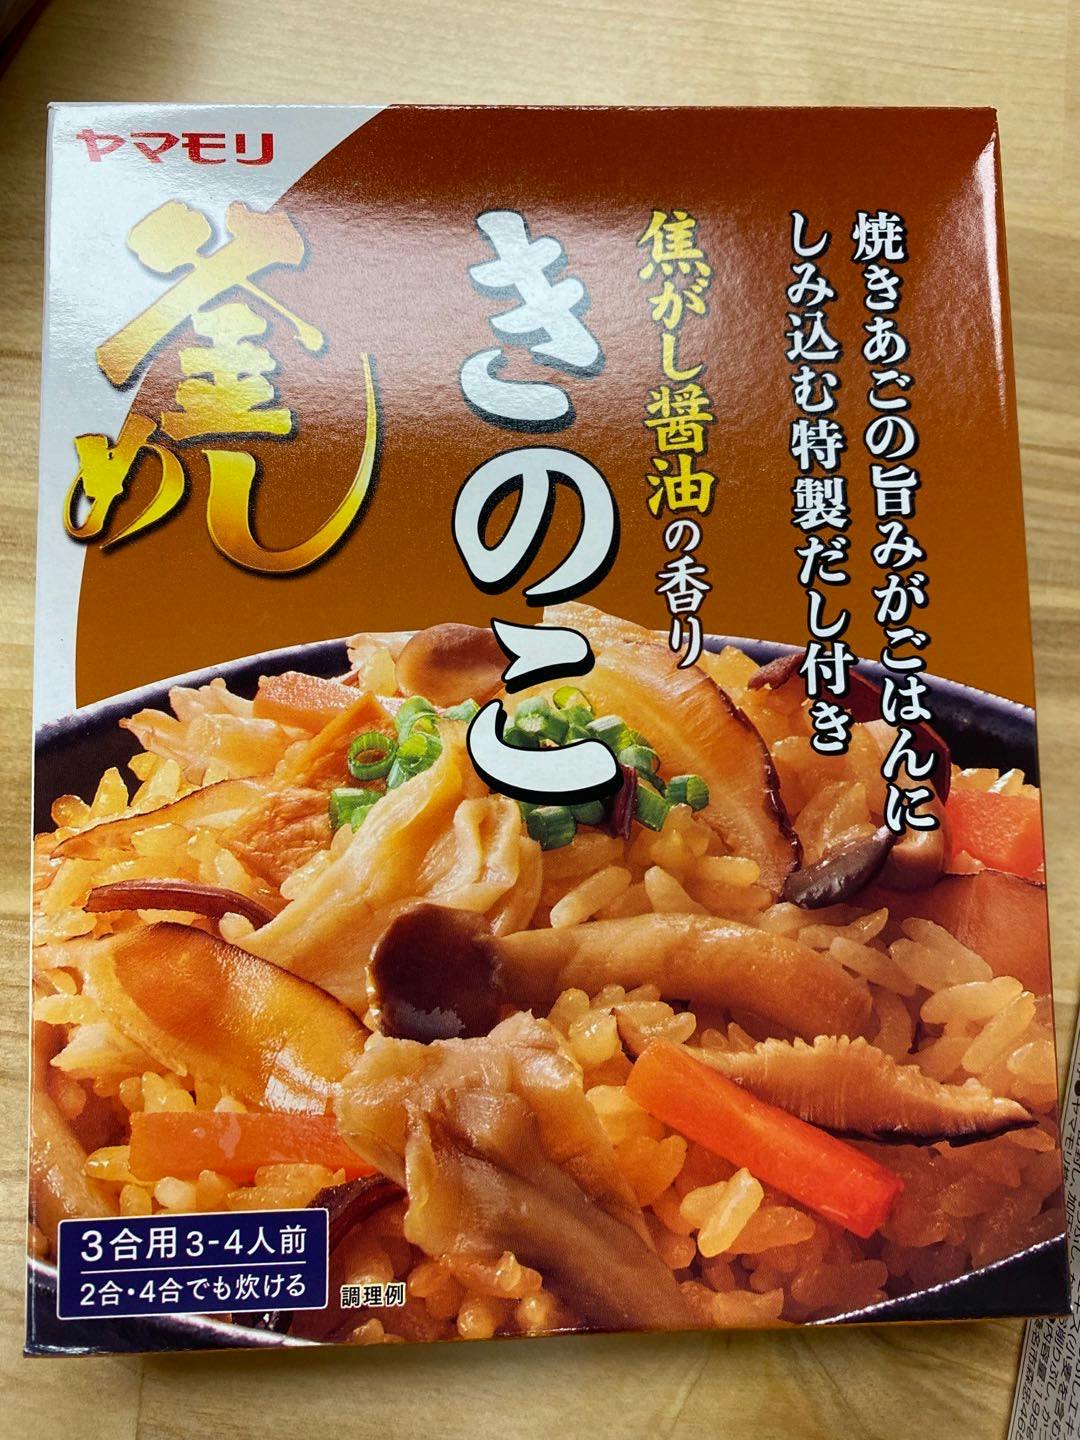 日本进口 日式蘑菇蒸饭调料